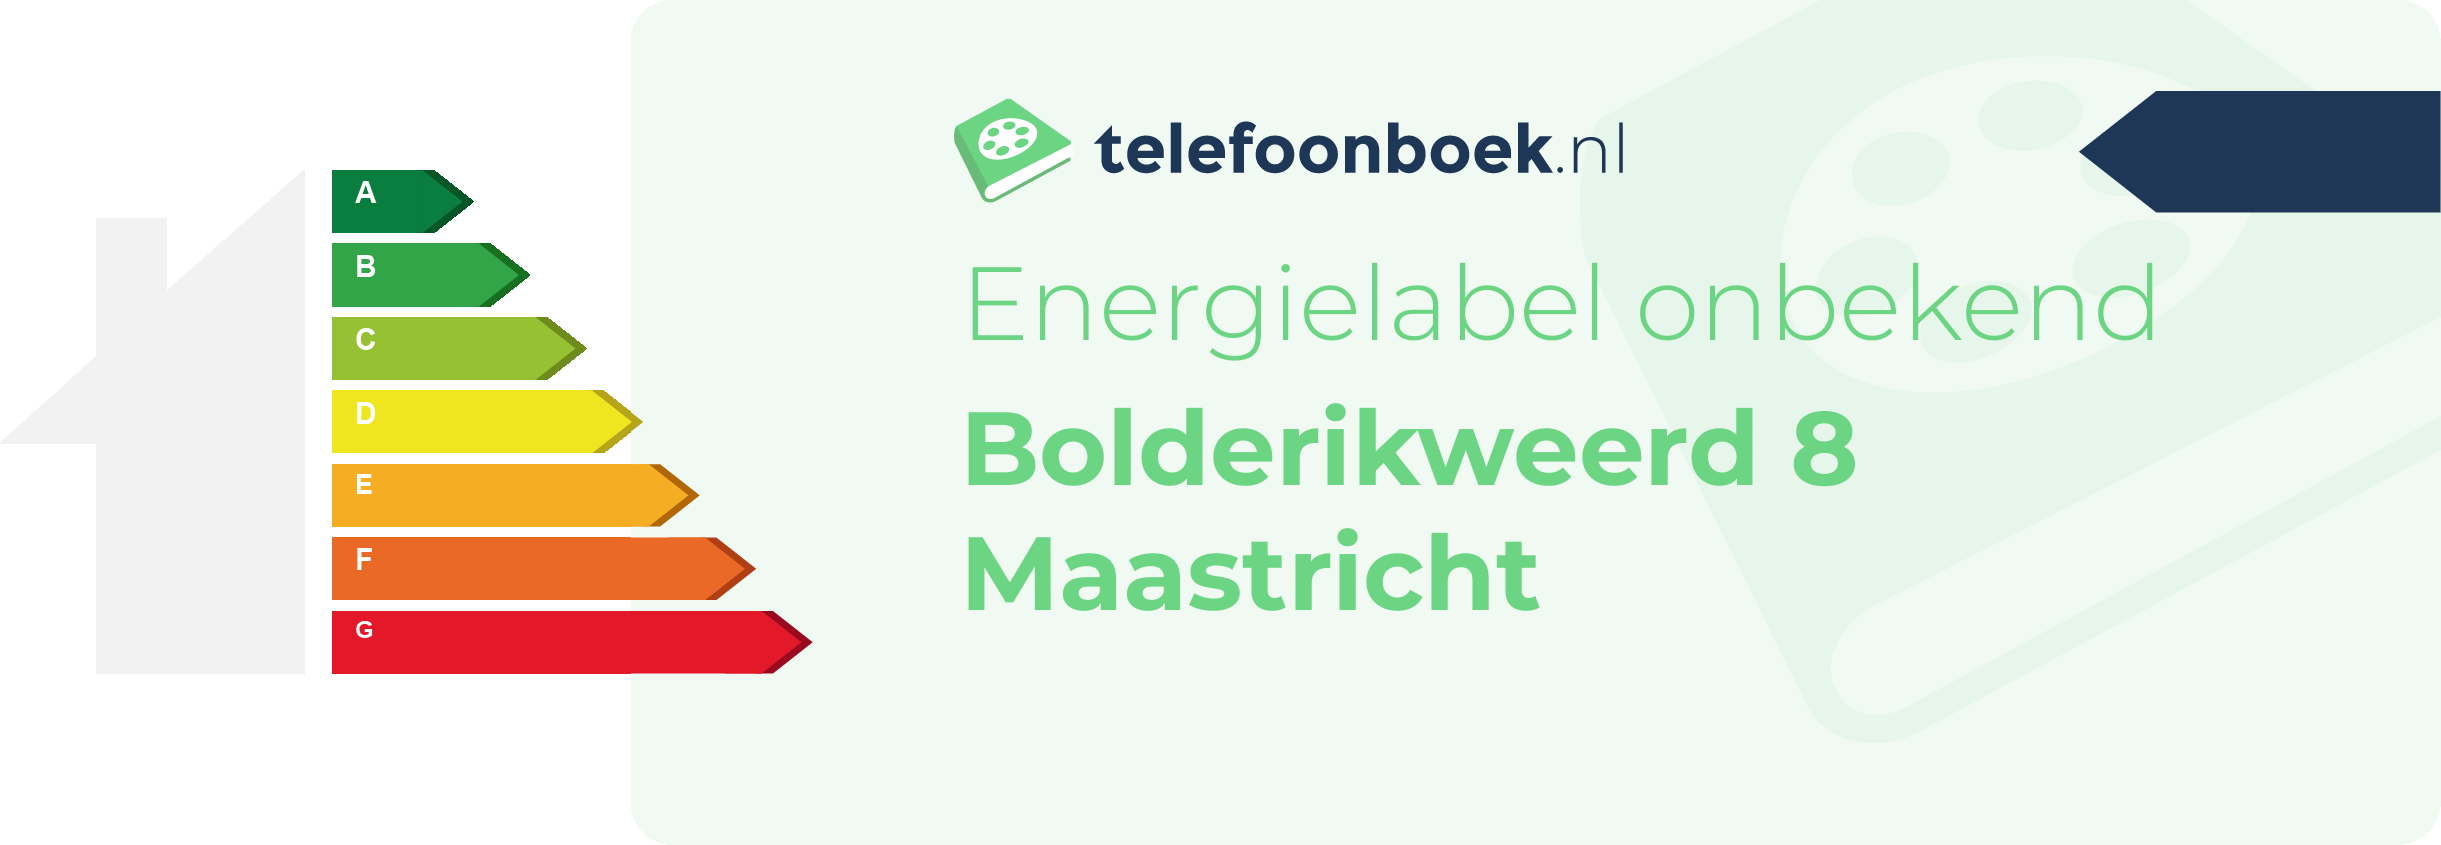 Energielabel Bolderikweerd 8 Maastricht